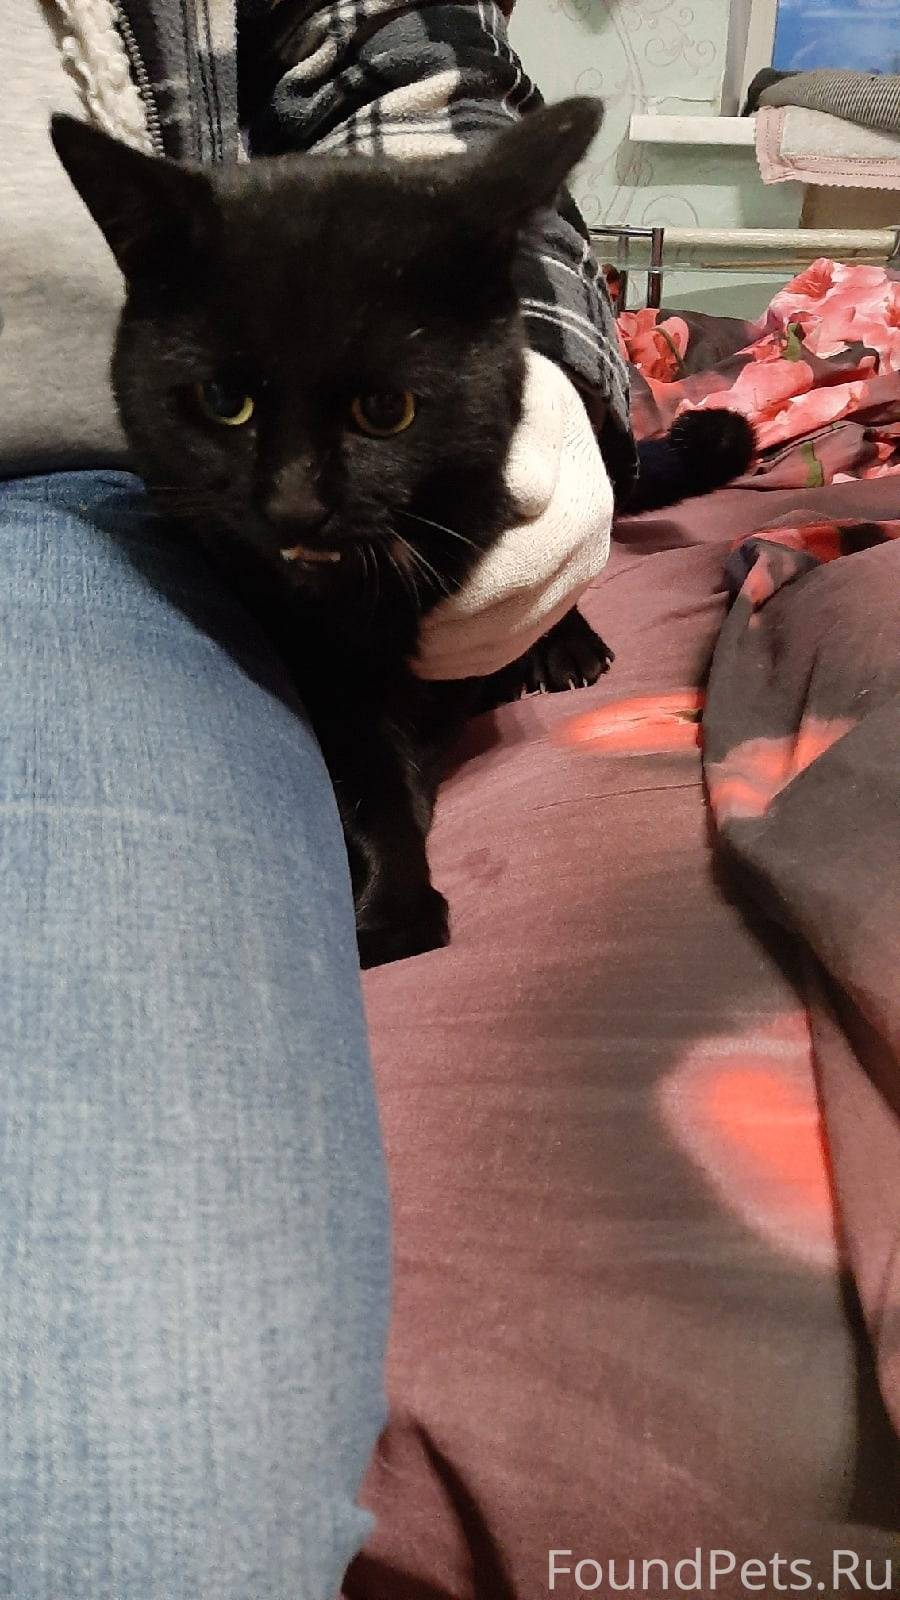 Найден чёрный кот с небольшим белым пятном на груди